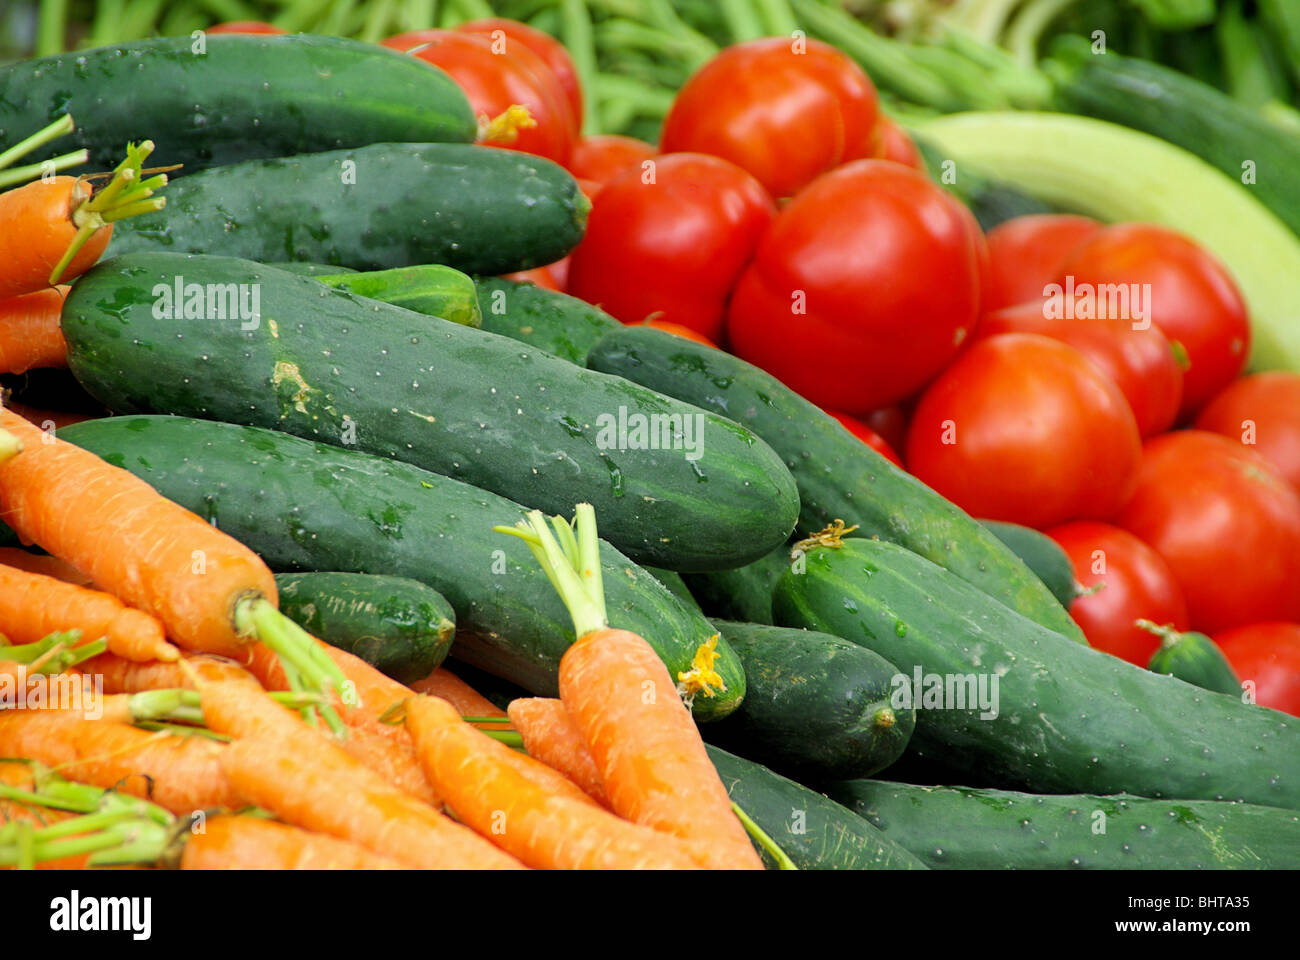 Gemüsemarkt - market stall for vegetable 01 Stock Photo